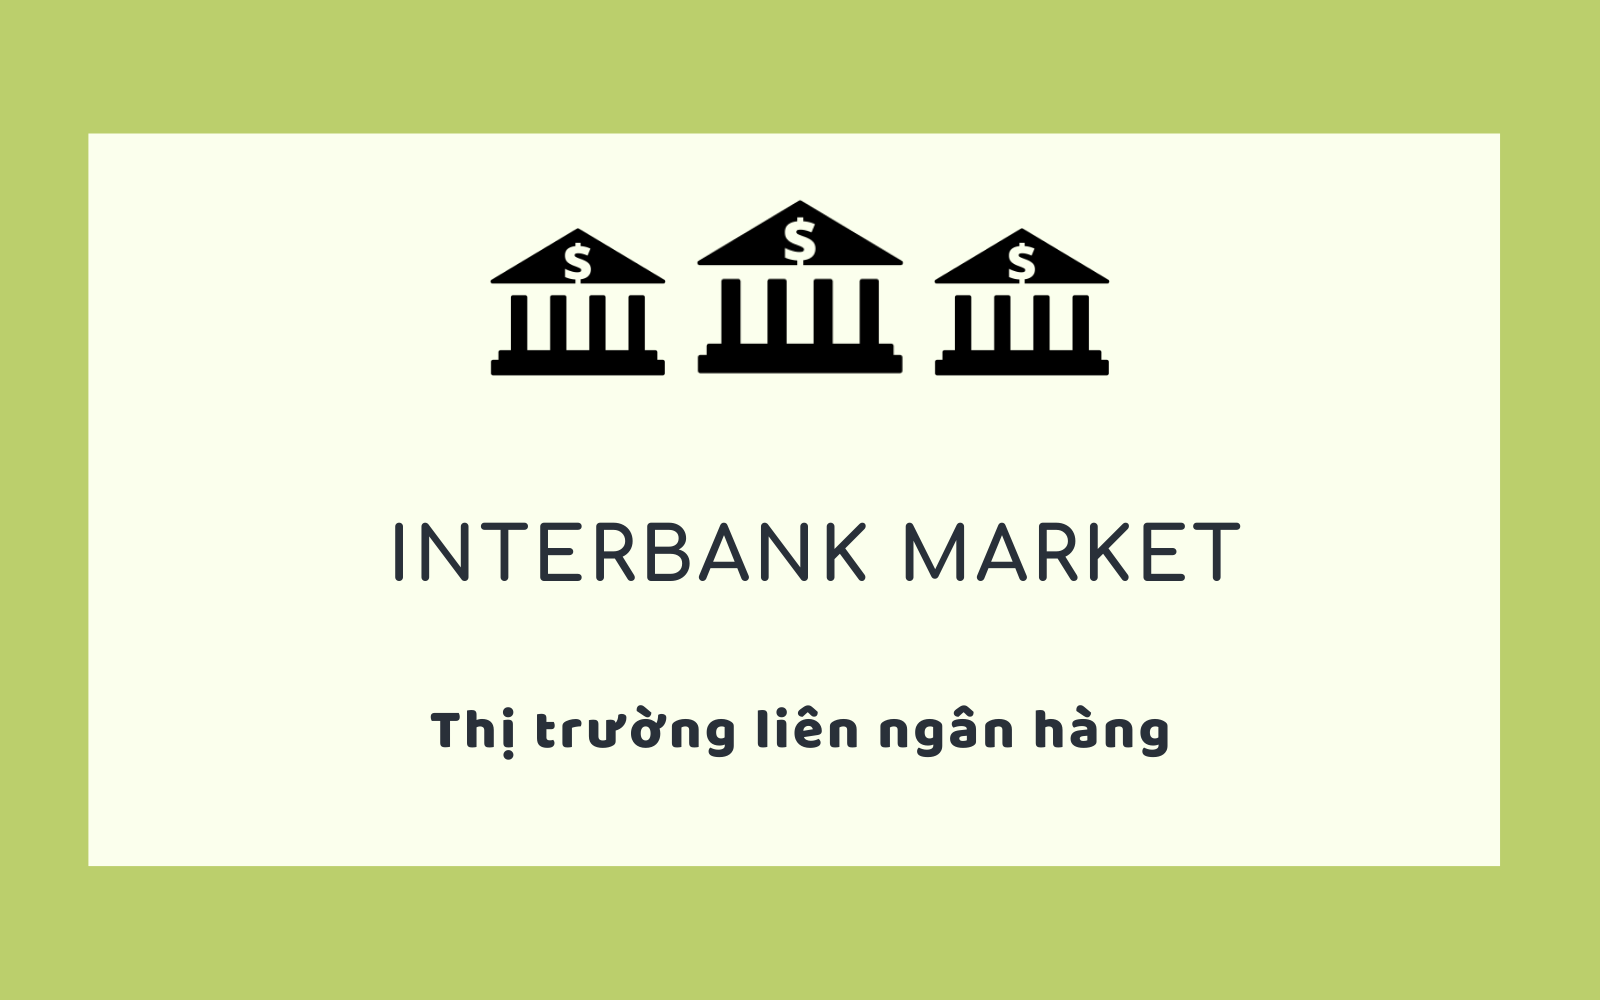 Thị trường nội tệ liên ngân hàng là gì? Quy định về thị trường nội tệ liên ngân hàng?